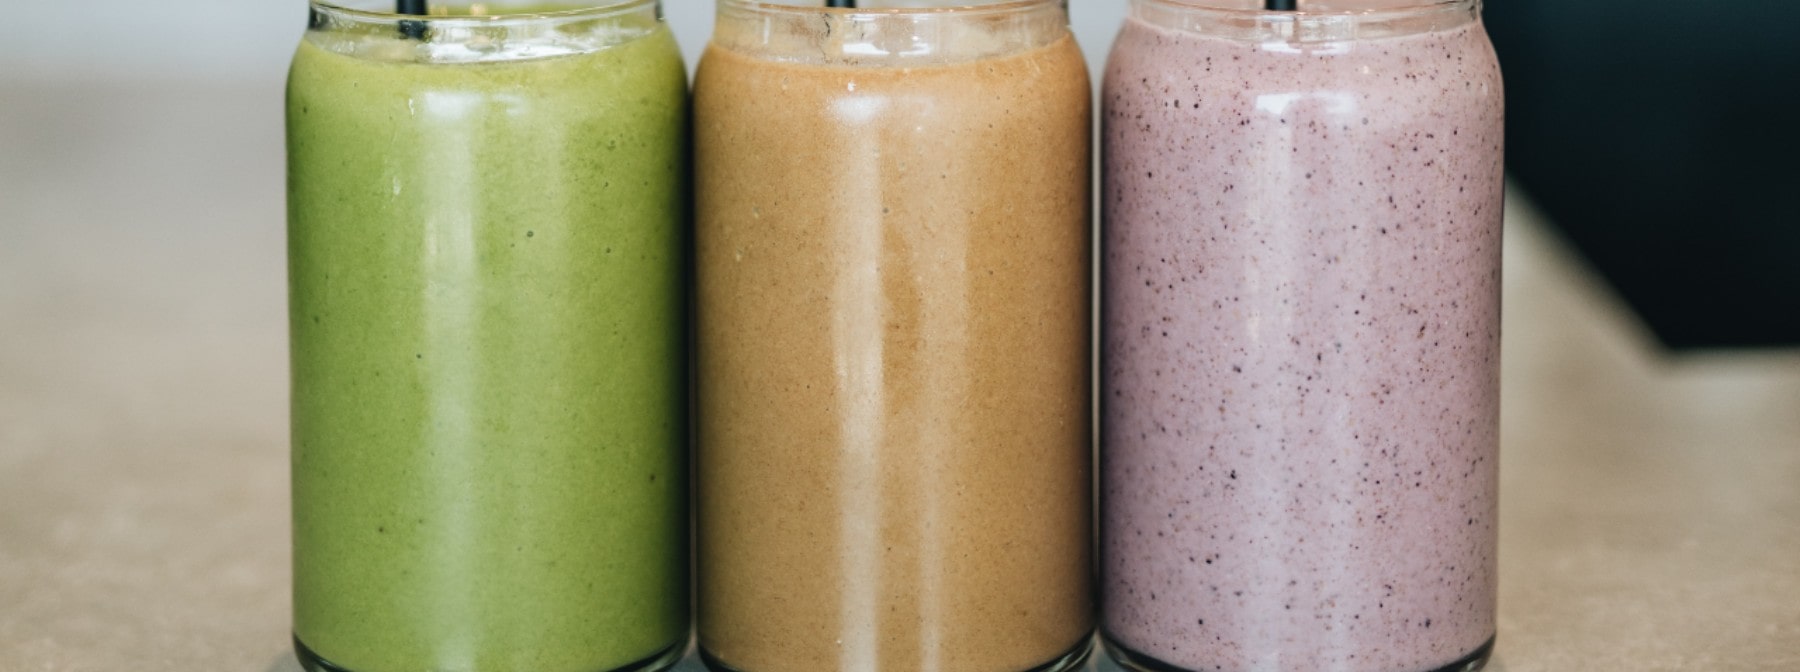 Ce este dieta cu smoothie? - Myprotein Blog